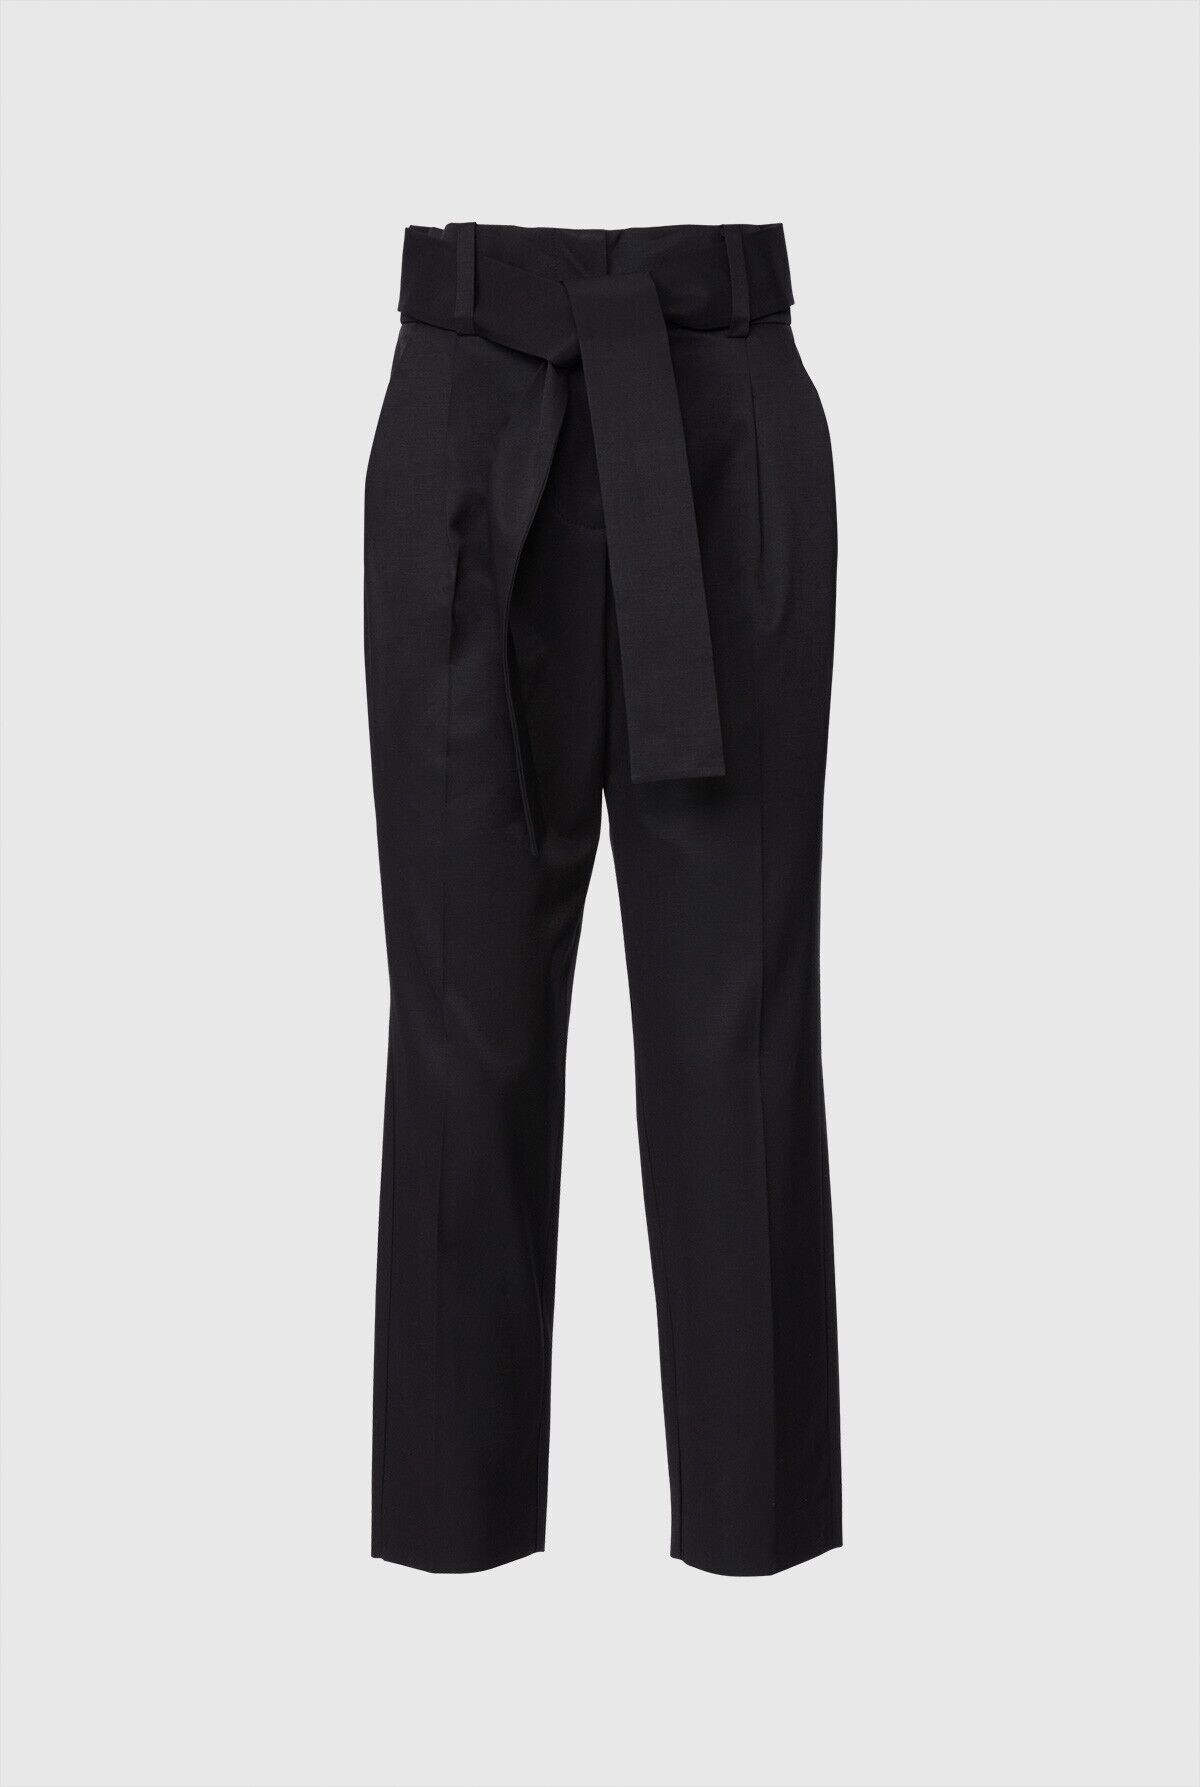  GIZIA - Yüksek Bel Kuşaklı Bilek Boy Siyah Pantolon